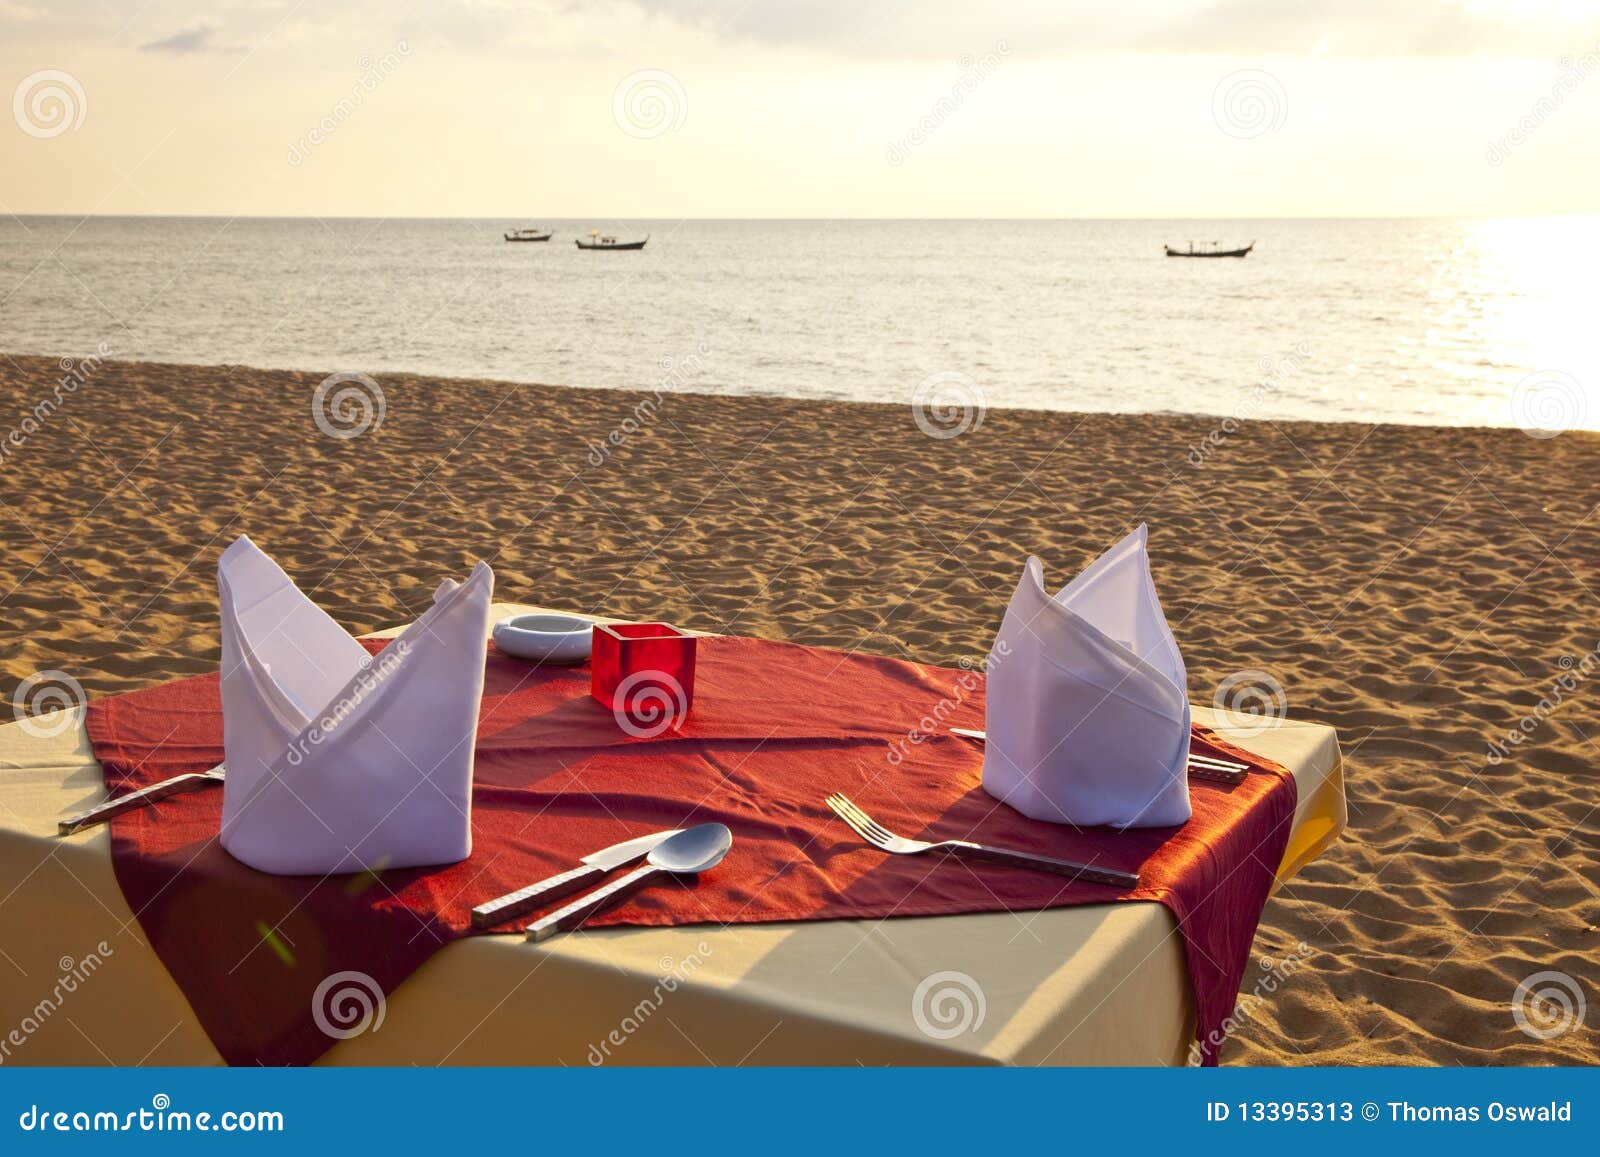 Nice dinner stock image. Image of caterer, ocean, paradise - 13395313